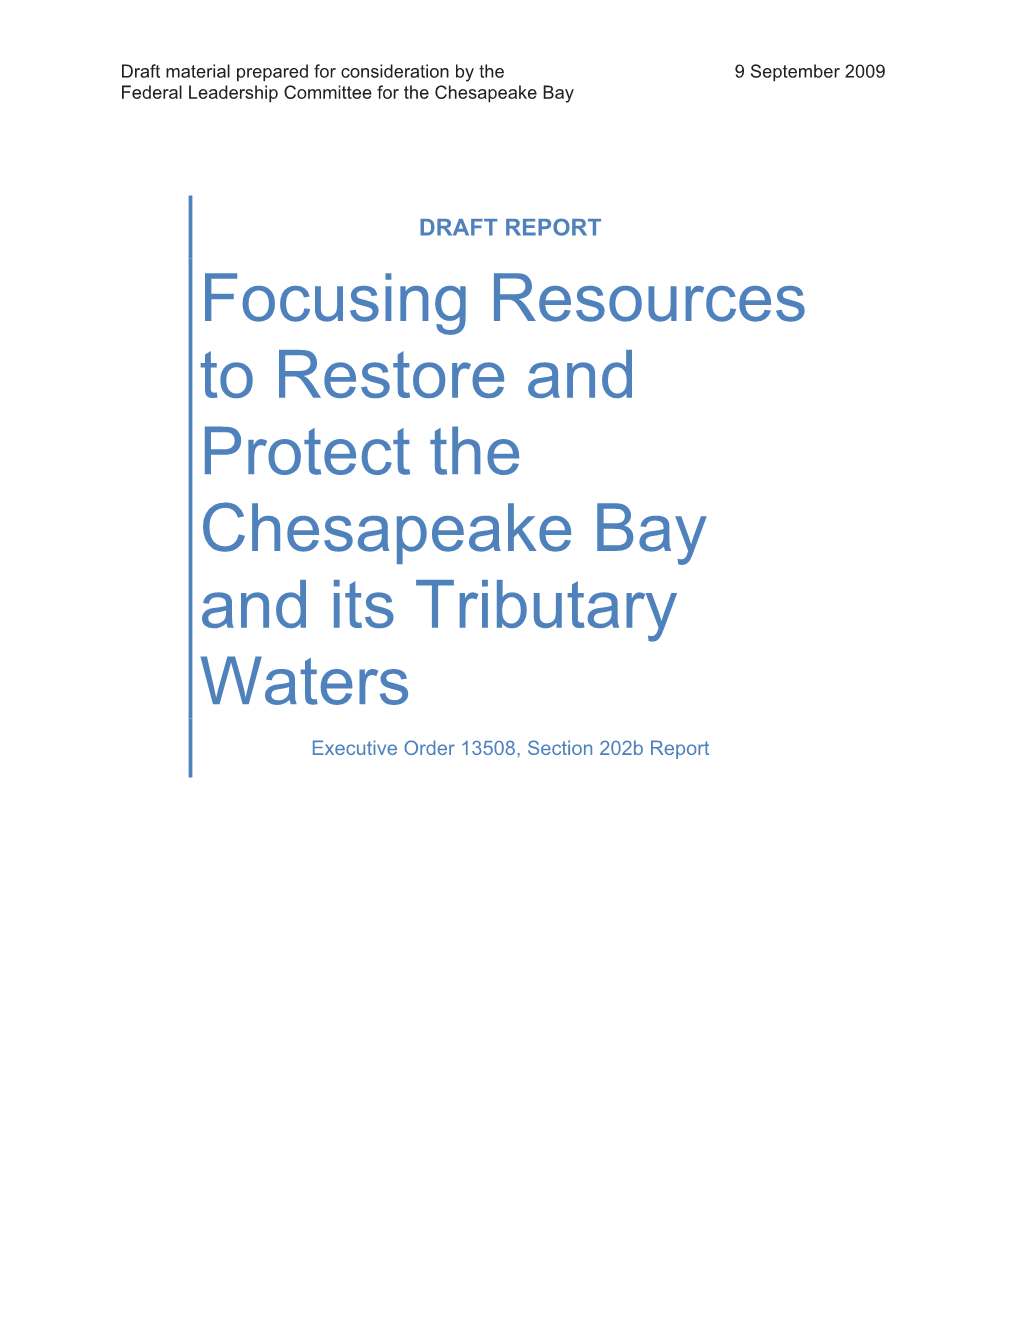 202(B) Targeting Resources Draft Report.Pdf